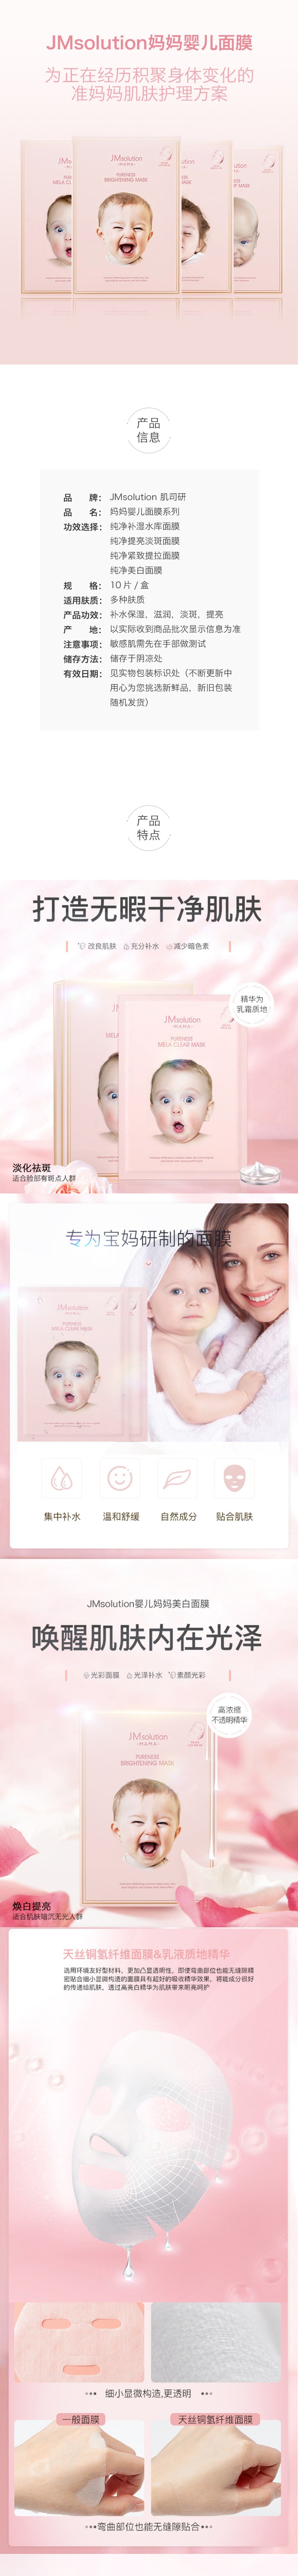 韩国 JMsolution 粉色系列 童颜面膜 紧致提拉 孕妇可用 10片入